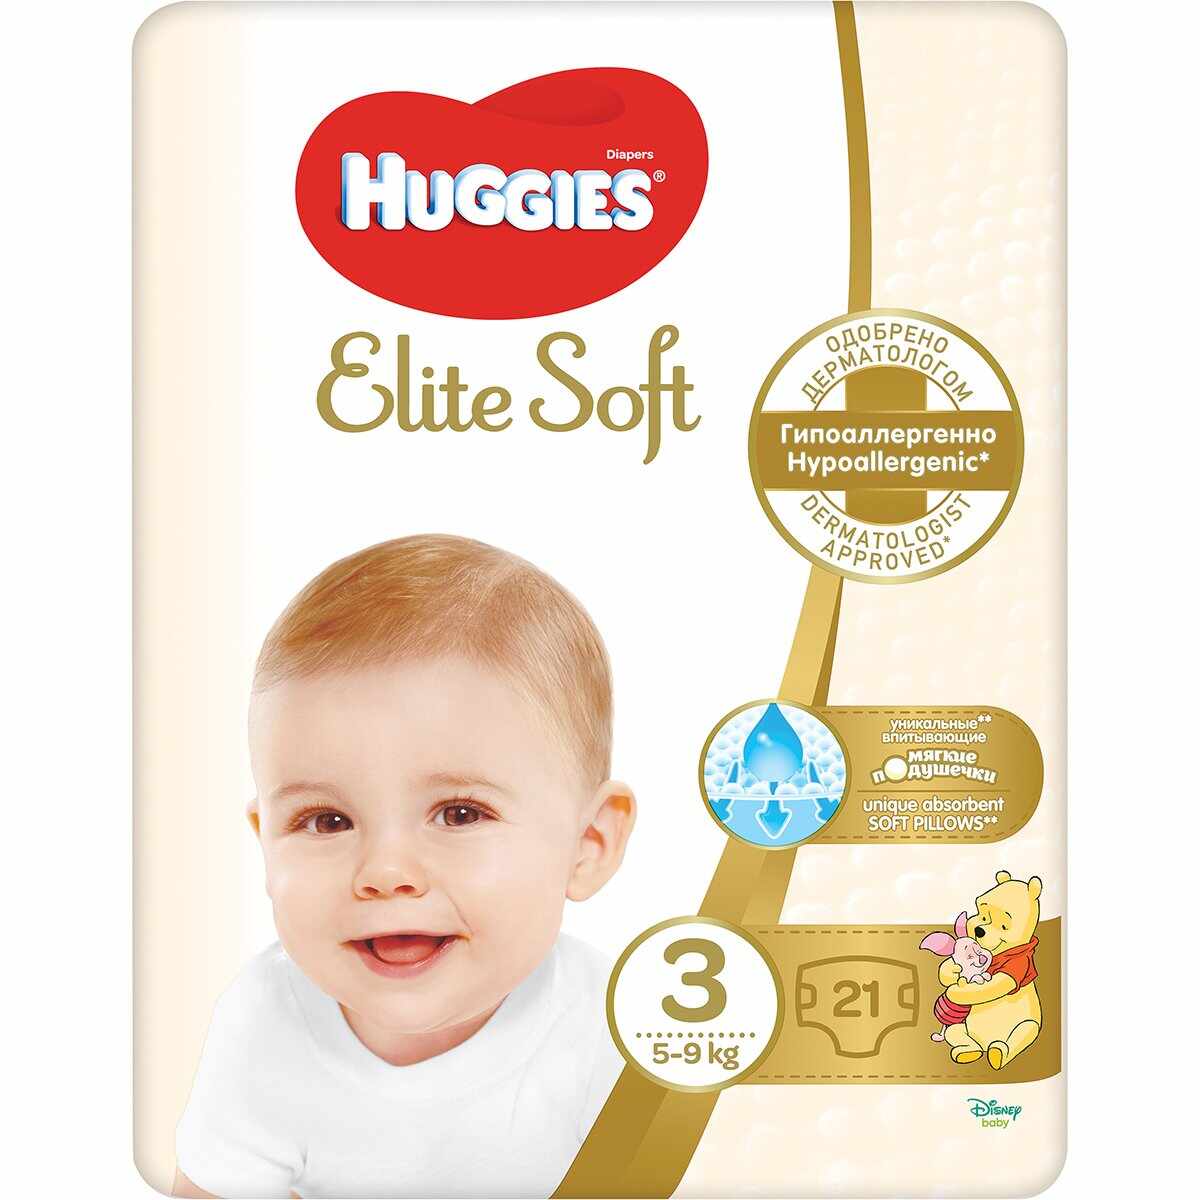 Scutece Huggies Elite Soft Convi, nr 3, 5-9 kg, 21 buc